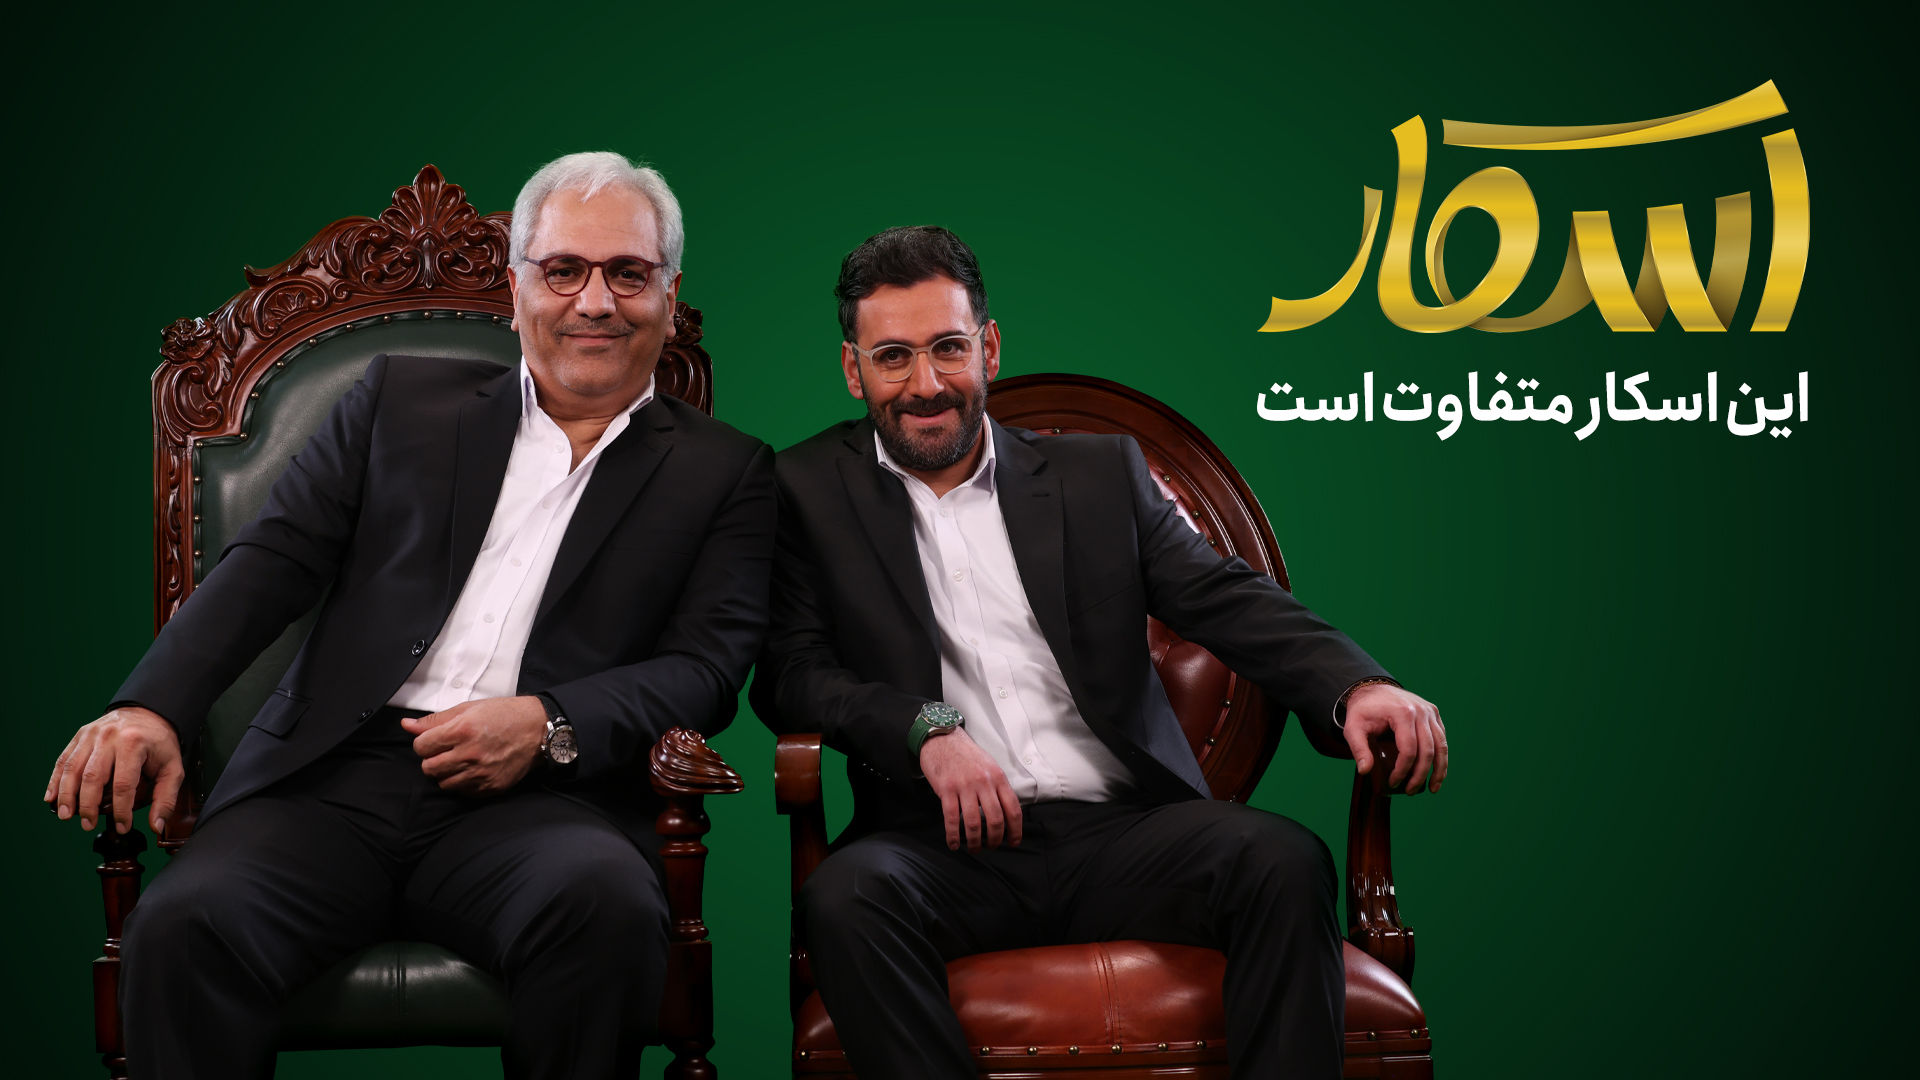 مهران مدیری و نیما شعبانژاد بر روی صندلی‌های برنامه رئالیتی‌شو اسکار نشسته‌اند